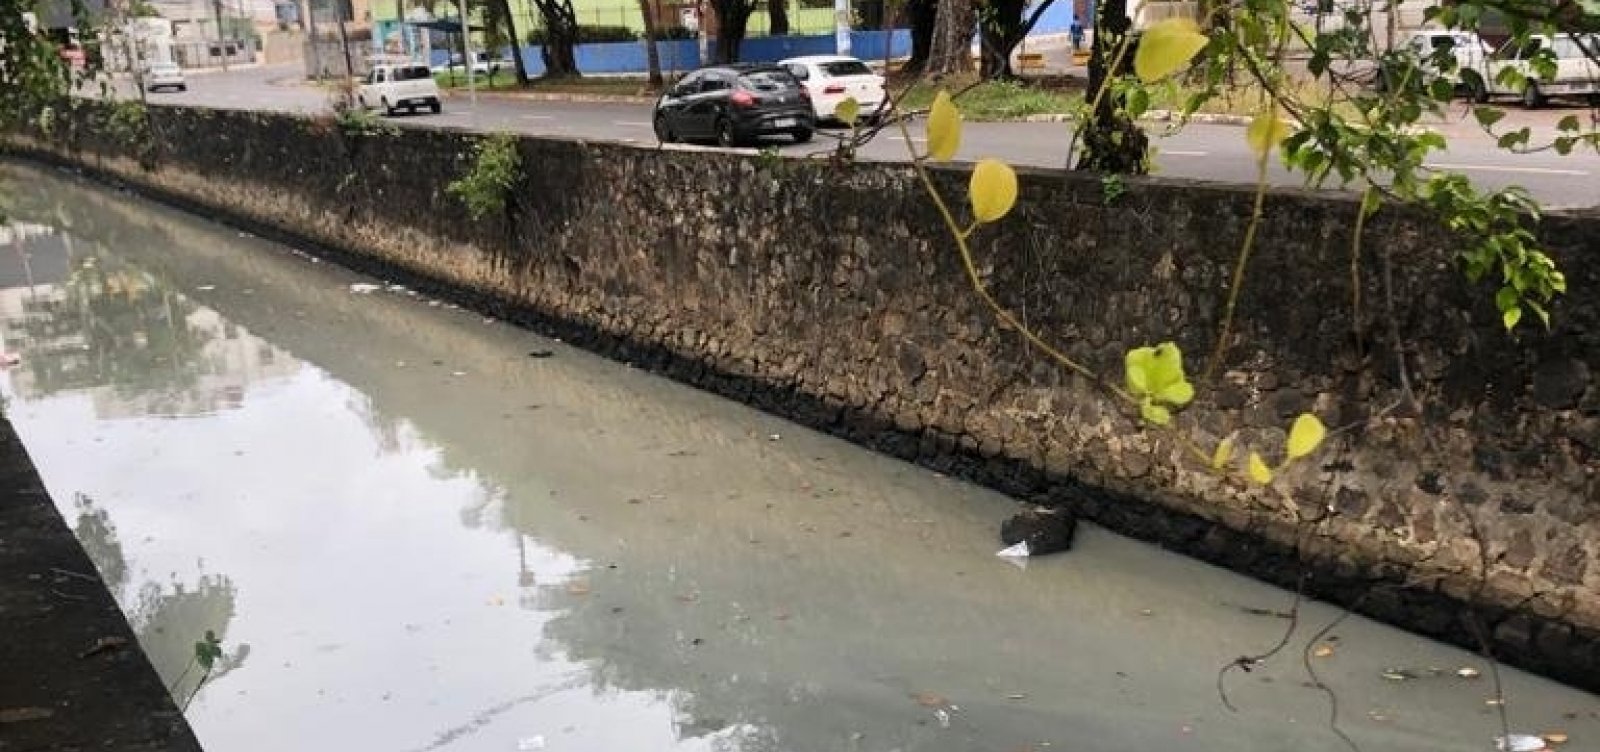 Moradores do Rio Vermelho relatam mau cheiro em canal; Embasa culpa maré